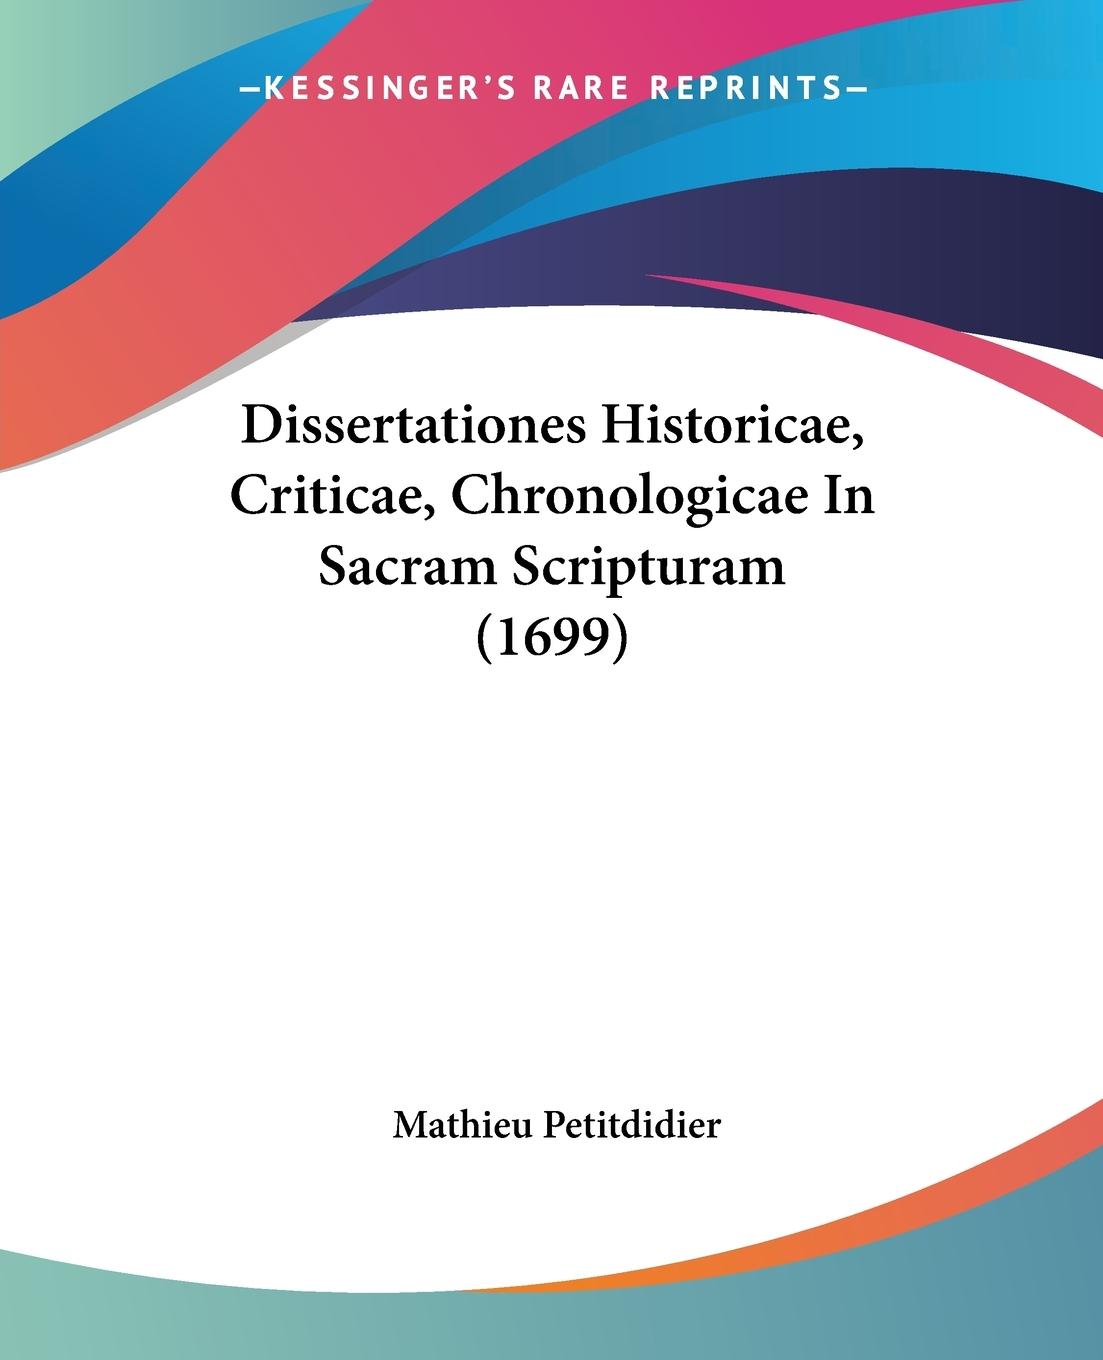 Dissertationes Historicae, Criticae, Chronologicae In Sacram Scripturam (1699) - Petitdidier, Mathieu